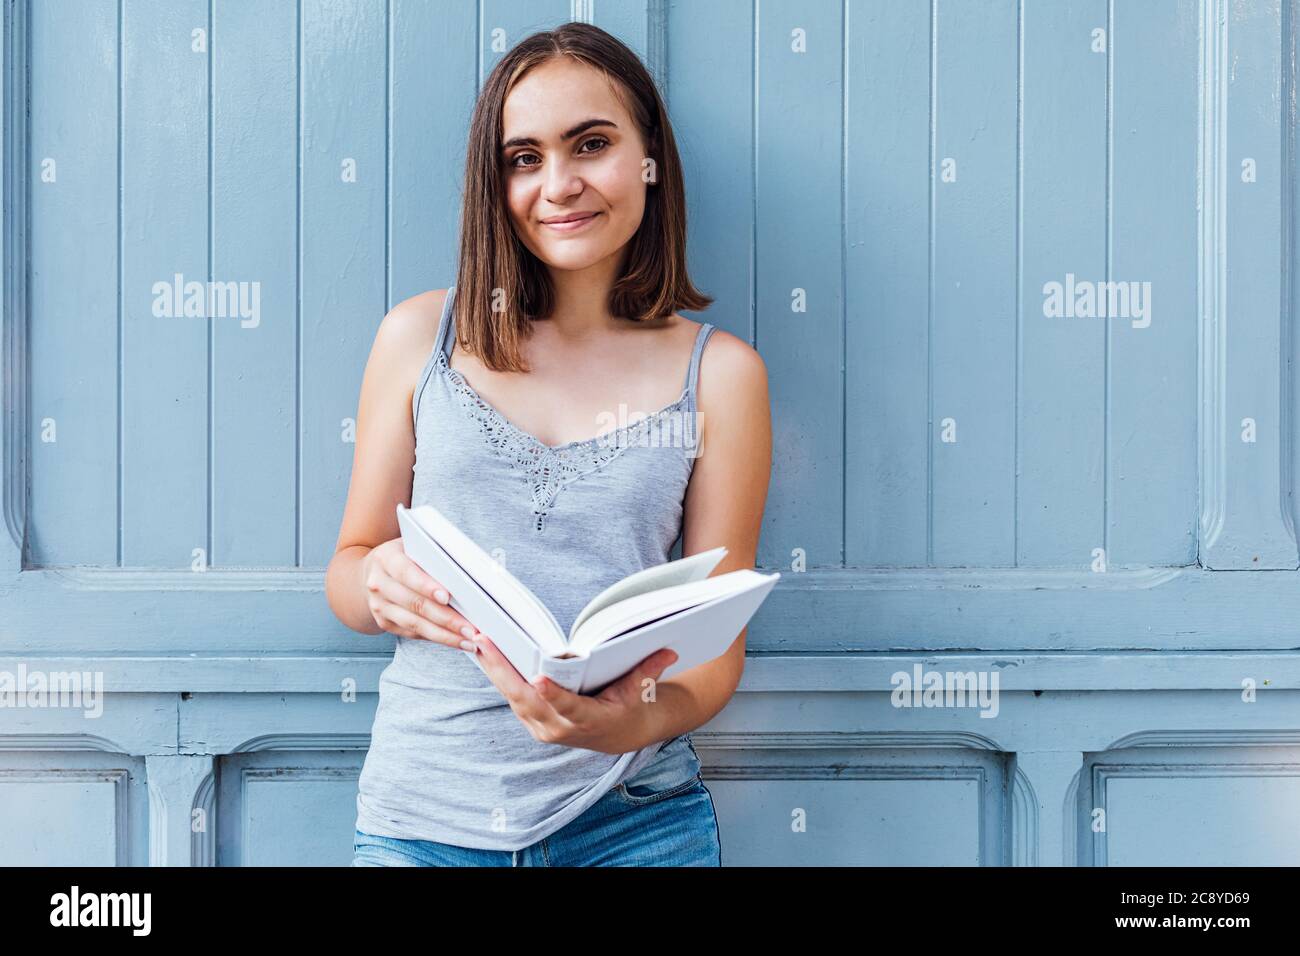 La niña sonríe y sostiene un papel blanco abierto gris azulado Foto de stock